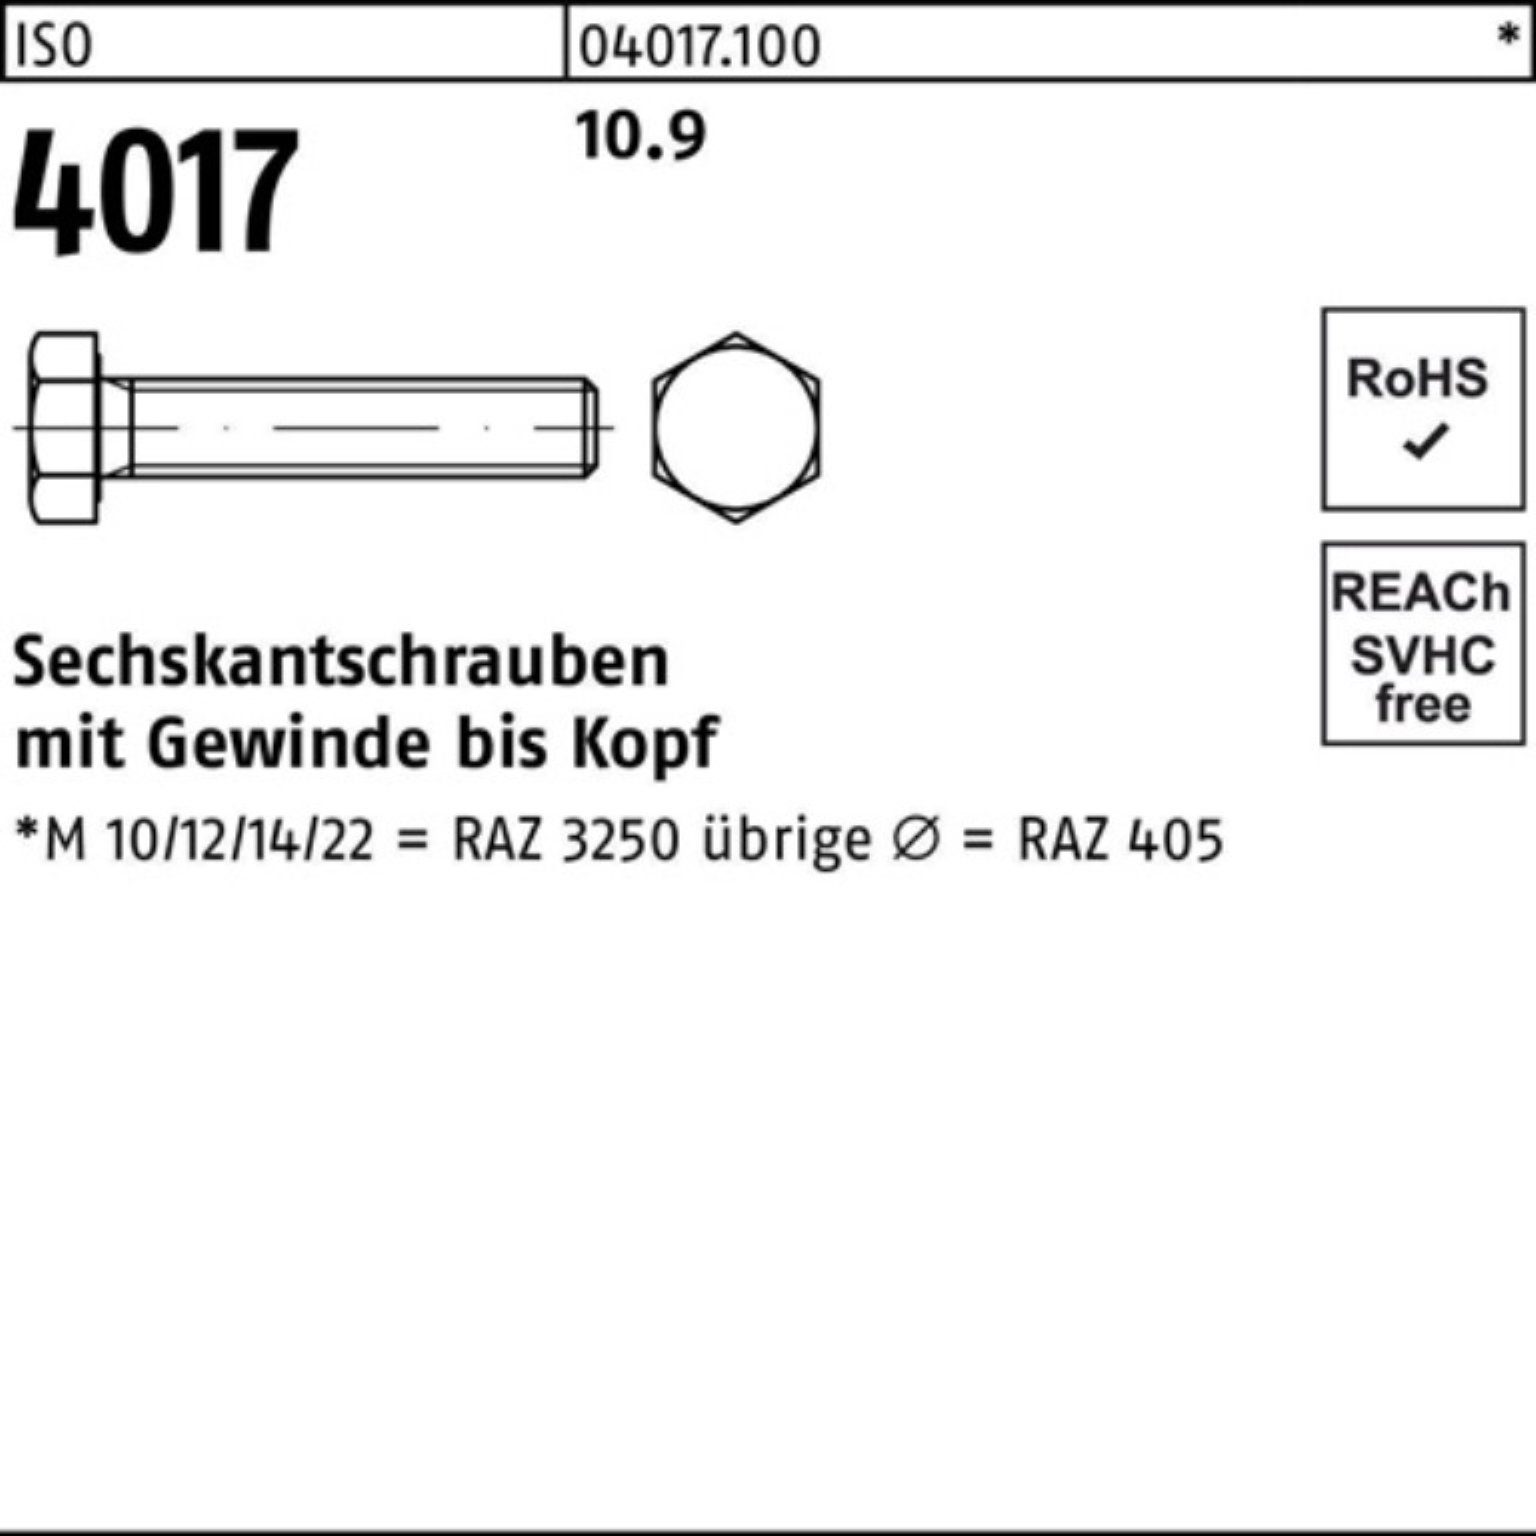 Sechskantschraube M24x 10.9 ISO ISO Sechskantschraube 40 Bufab 1 4017 Pack VG 220 Stück 100er